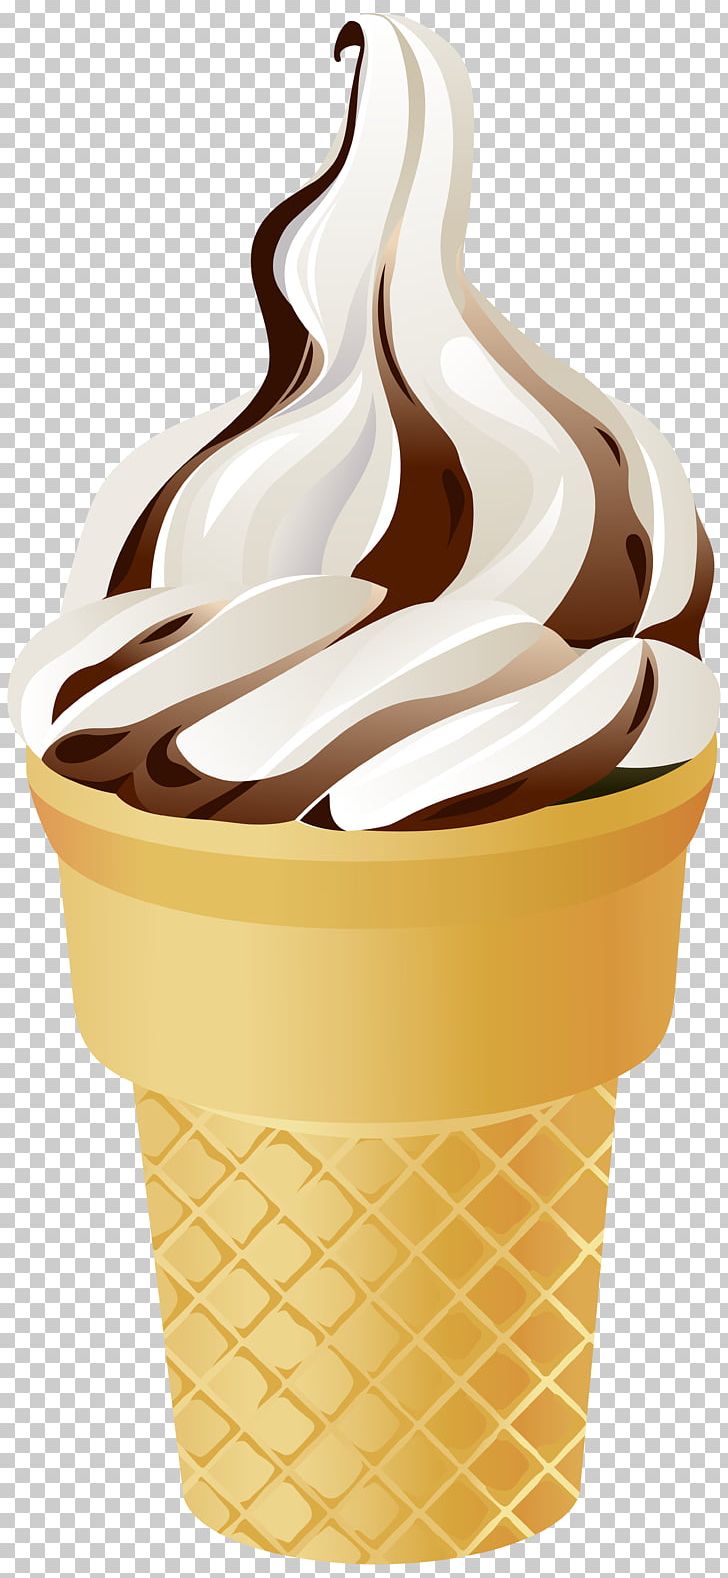 Ice Cream Cones Sundae Vanilla Ice Cream PNG, Clipart, Chocolate, Chocolate Ice Cream, Chocolate Syrup, Cream, Cup Free PNG Download